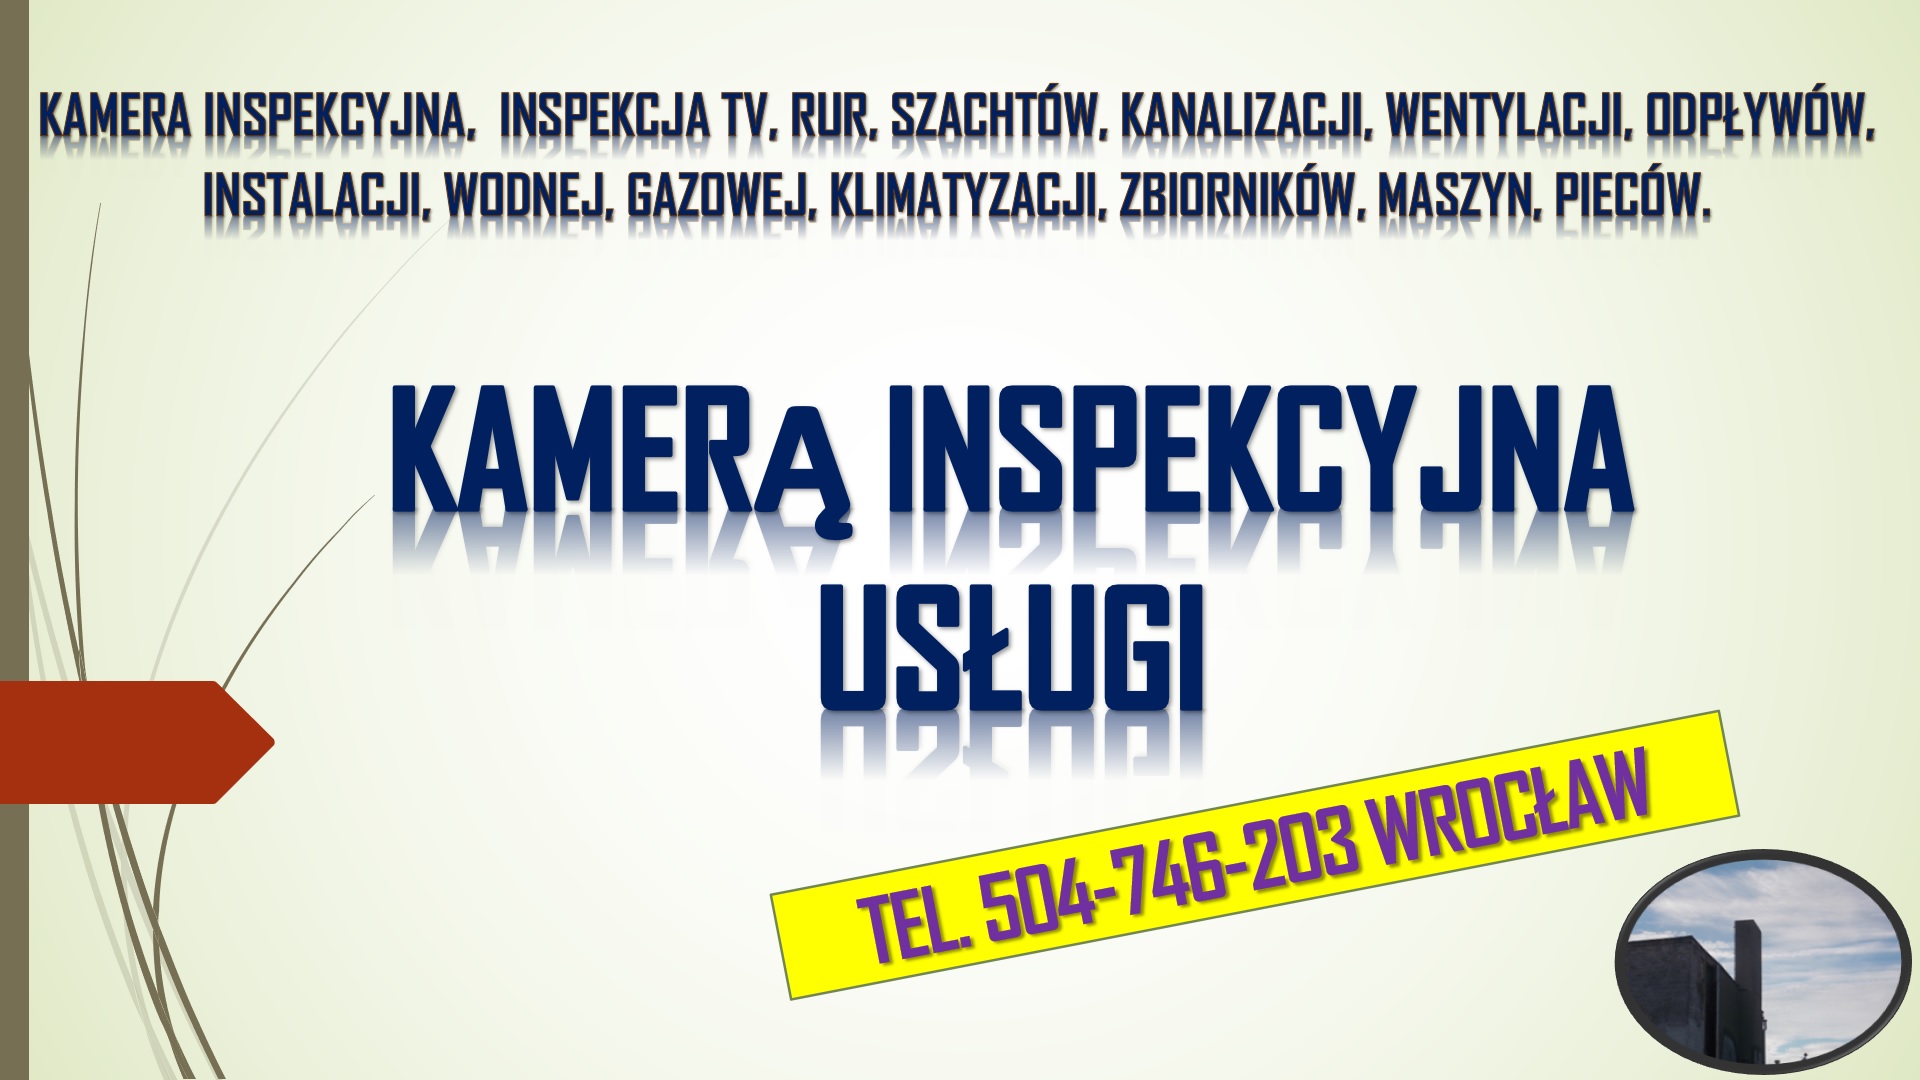 Sprawdzenie komina, tel. 504-746-203, cena, Wrocław, kamera inspekcyjna, 